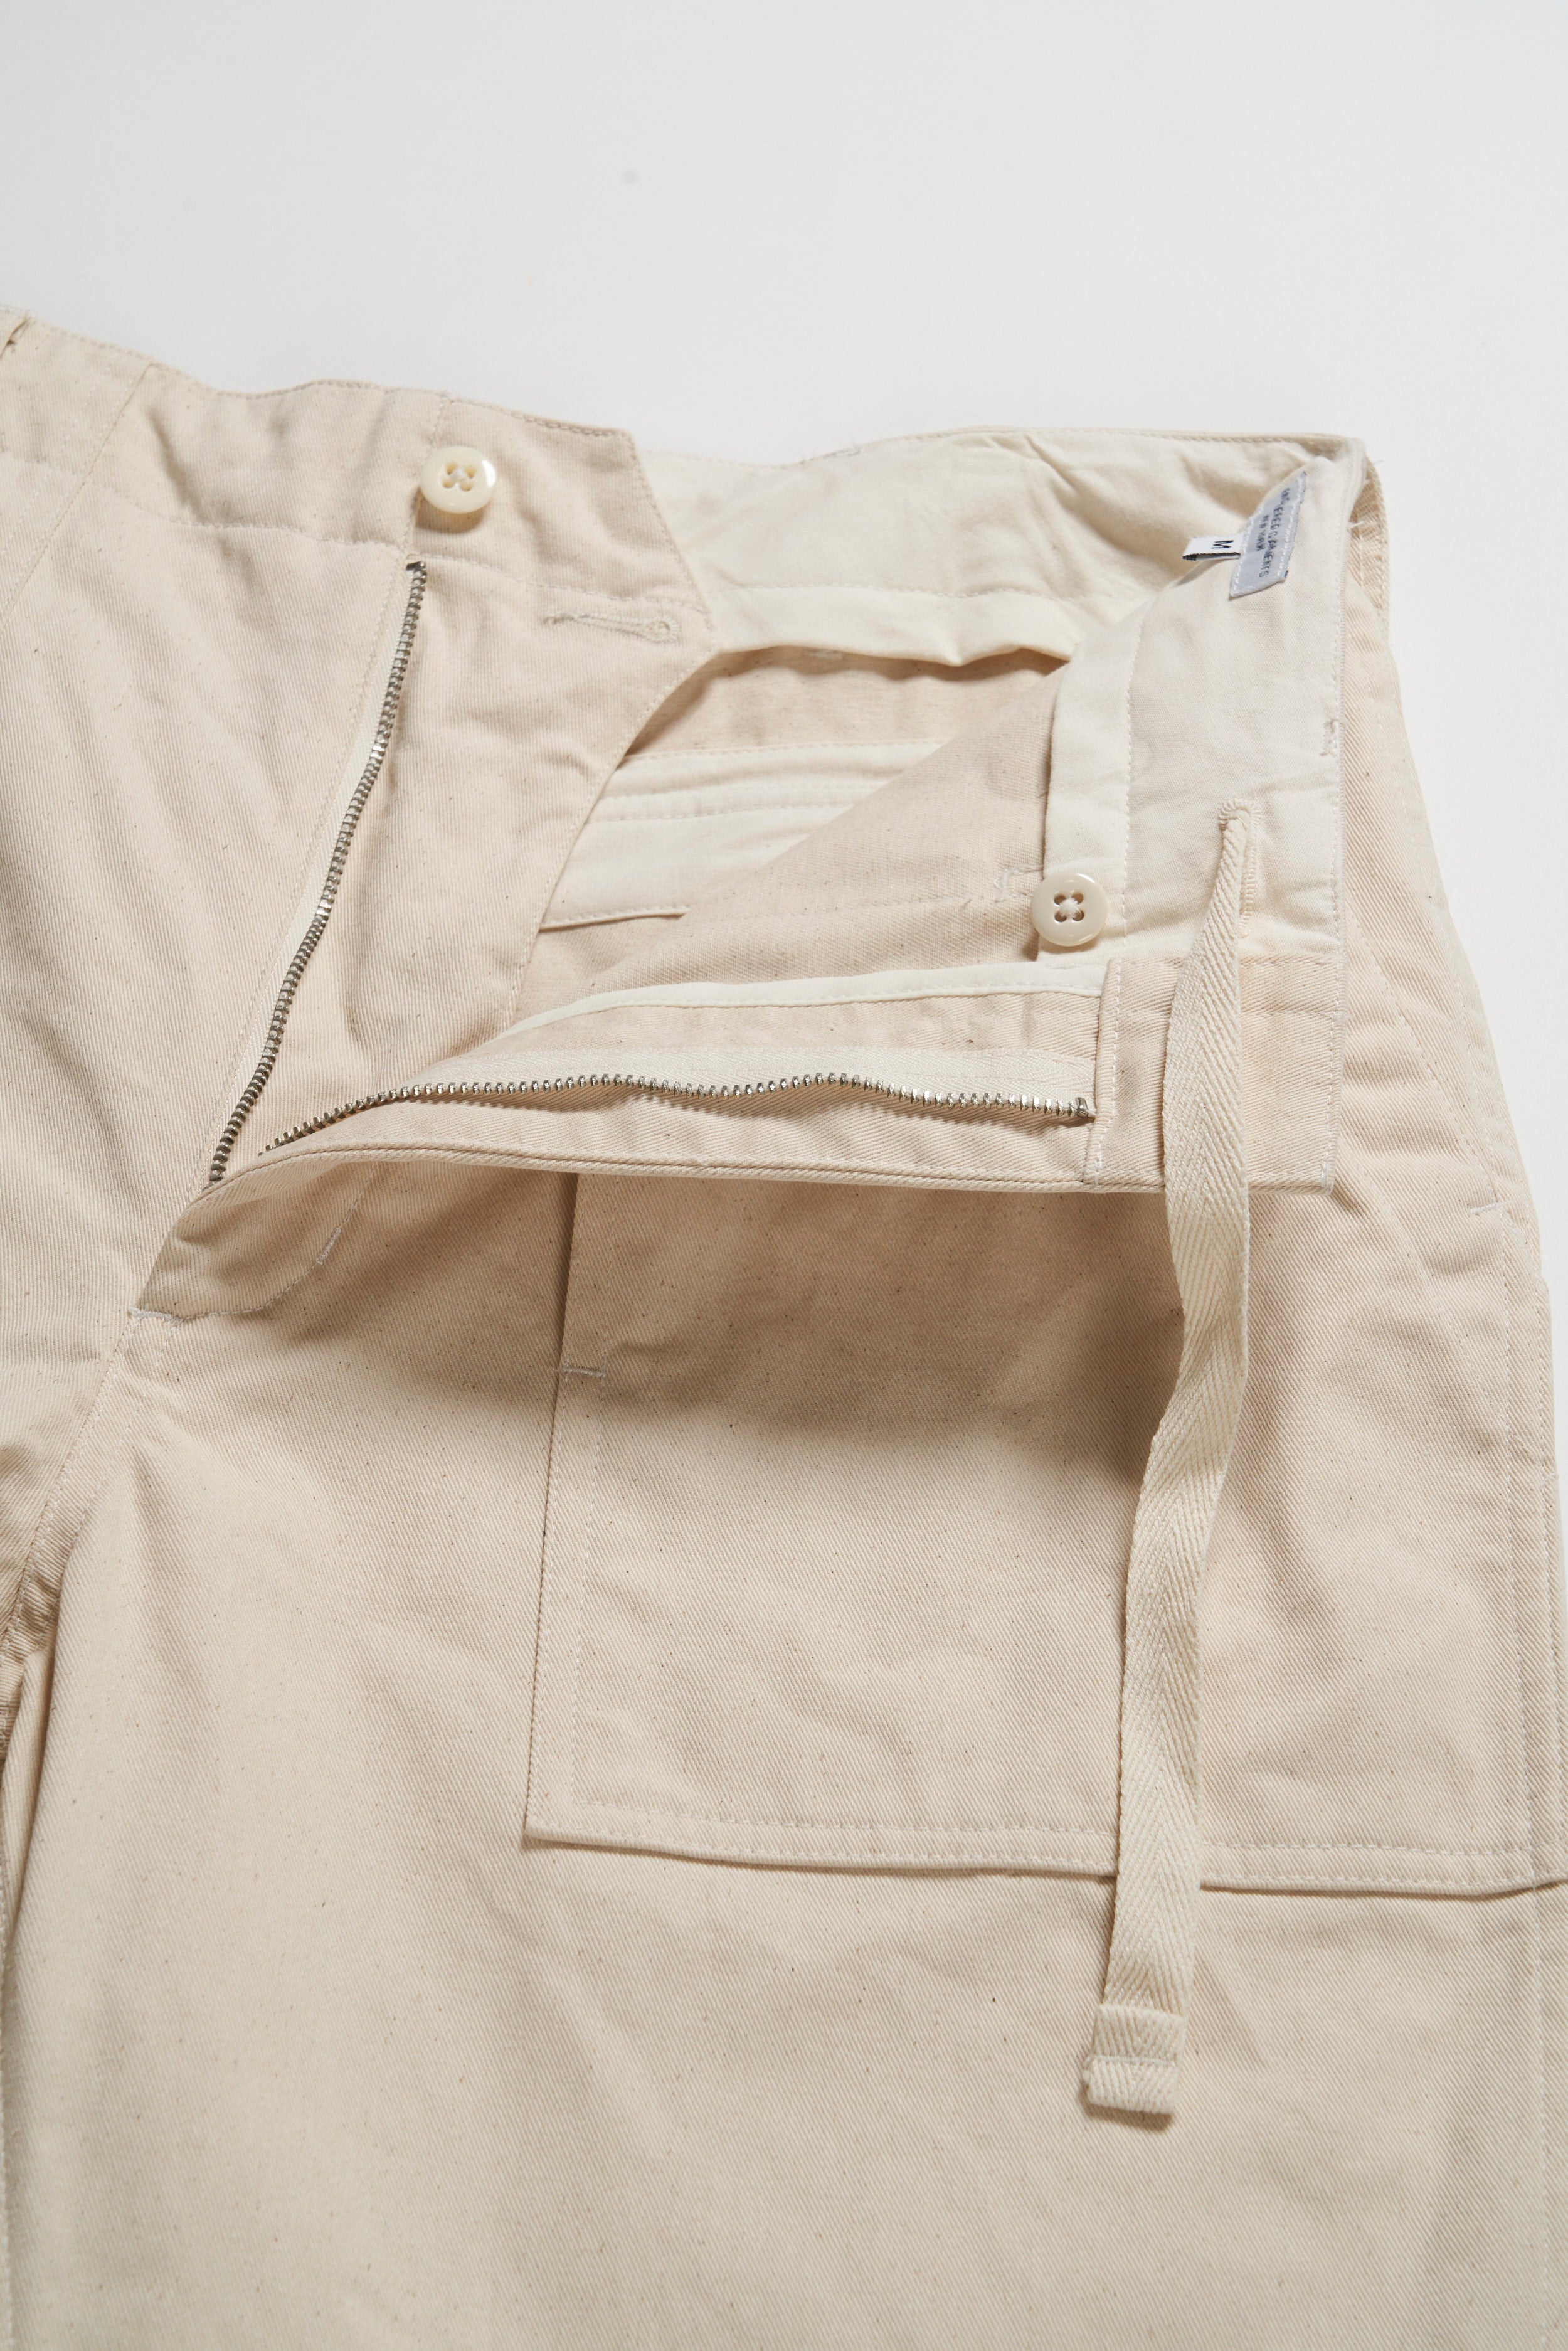 Engineered Garments Fatigue Pant  - Natural Chino Twill